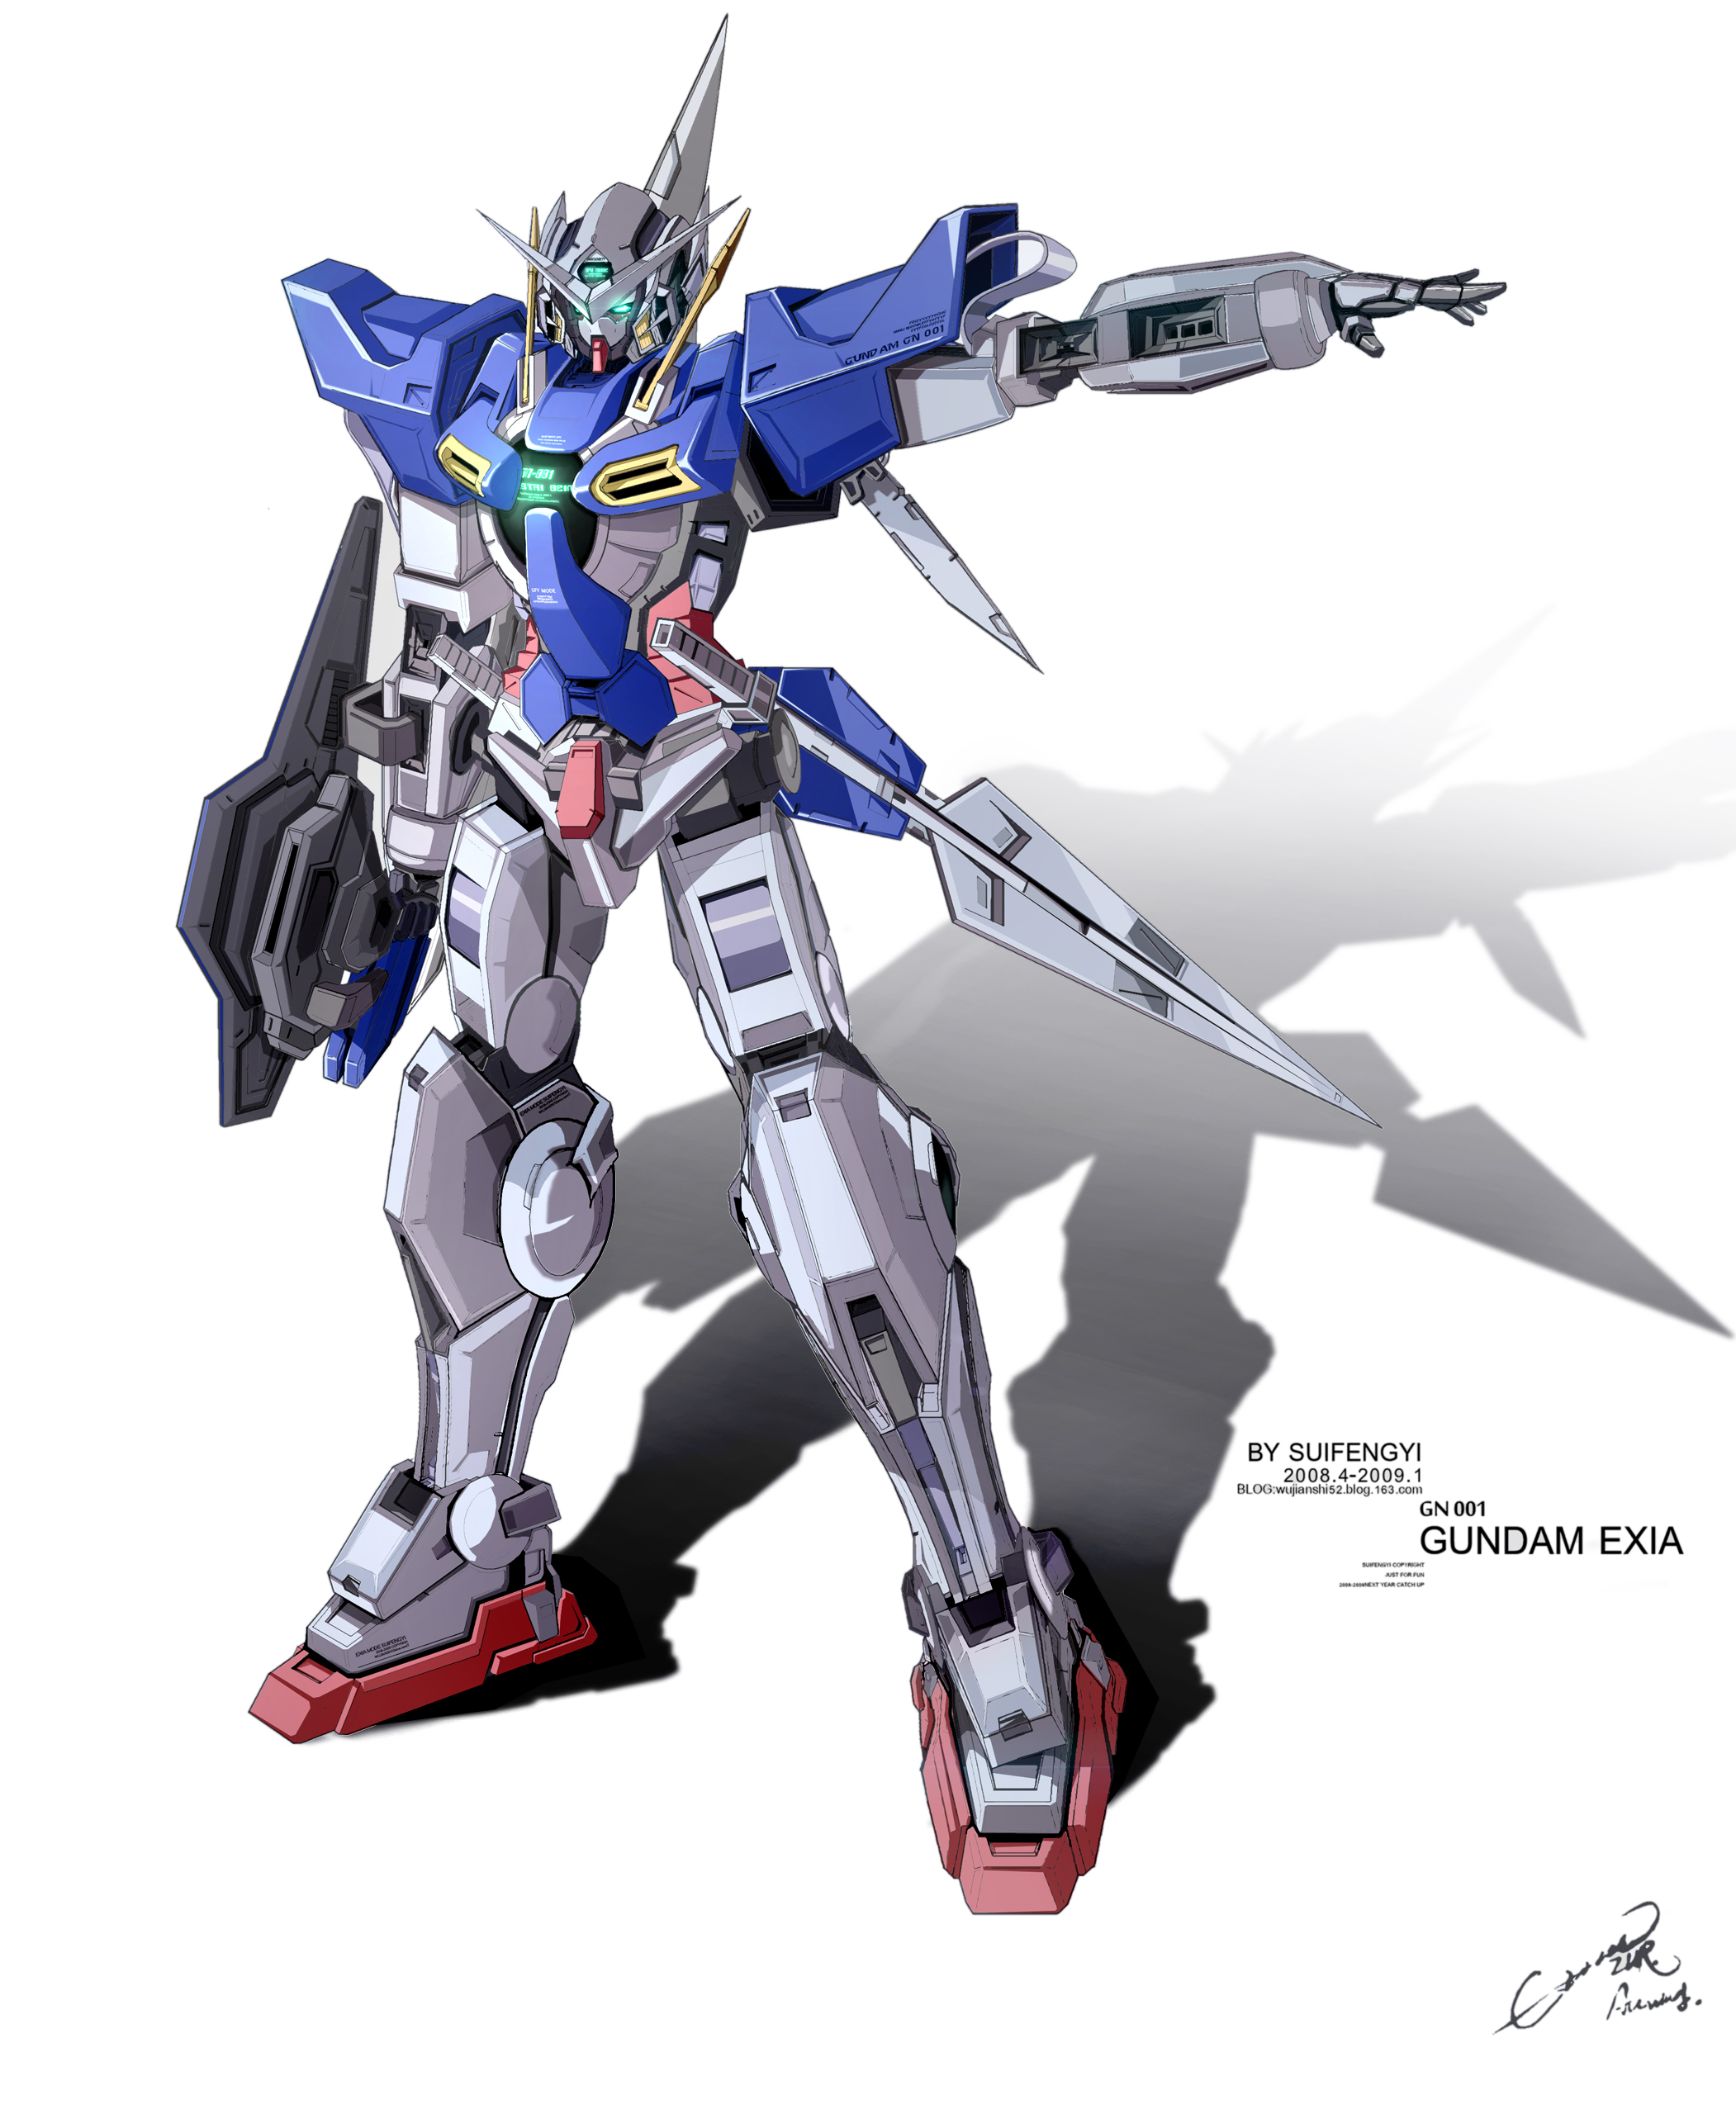 Anime 2102x2560 anime mechs Gundam Mobile Suit Gundam 00 Super Robot Taisen Gundam Exia artwork digital art fan art